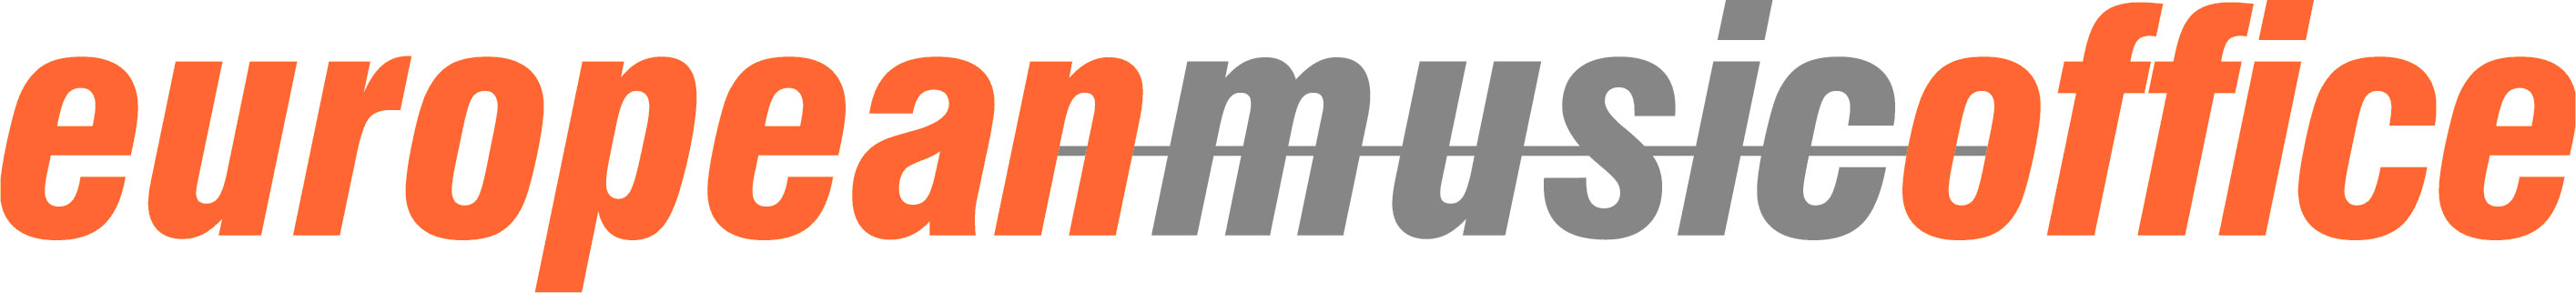 logo for European Music Office